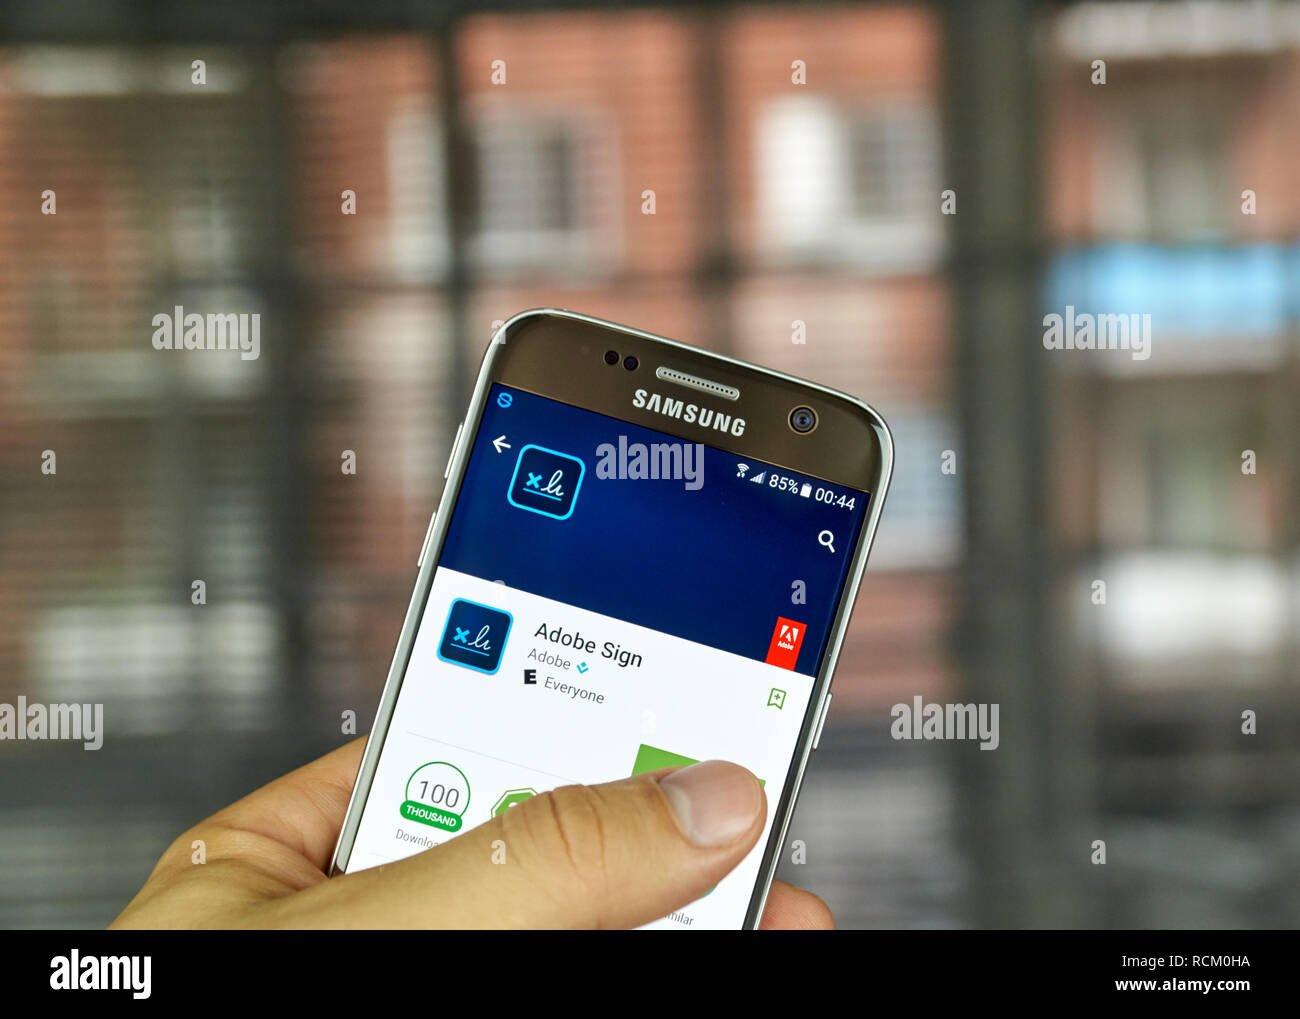 MONTREAL, KANADA - Juli 15: Adobe Anwendung auf Samsung S7-Bildschirm. Adobe Sign ist ein e-Signatur Lösung, die vollständig und nahtlos integriert. Stockfoto